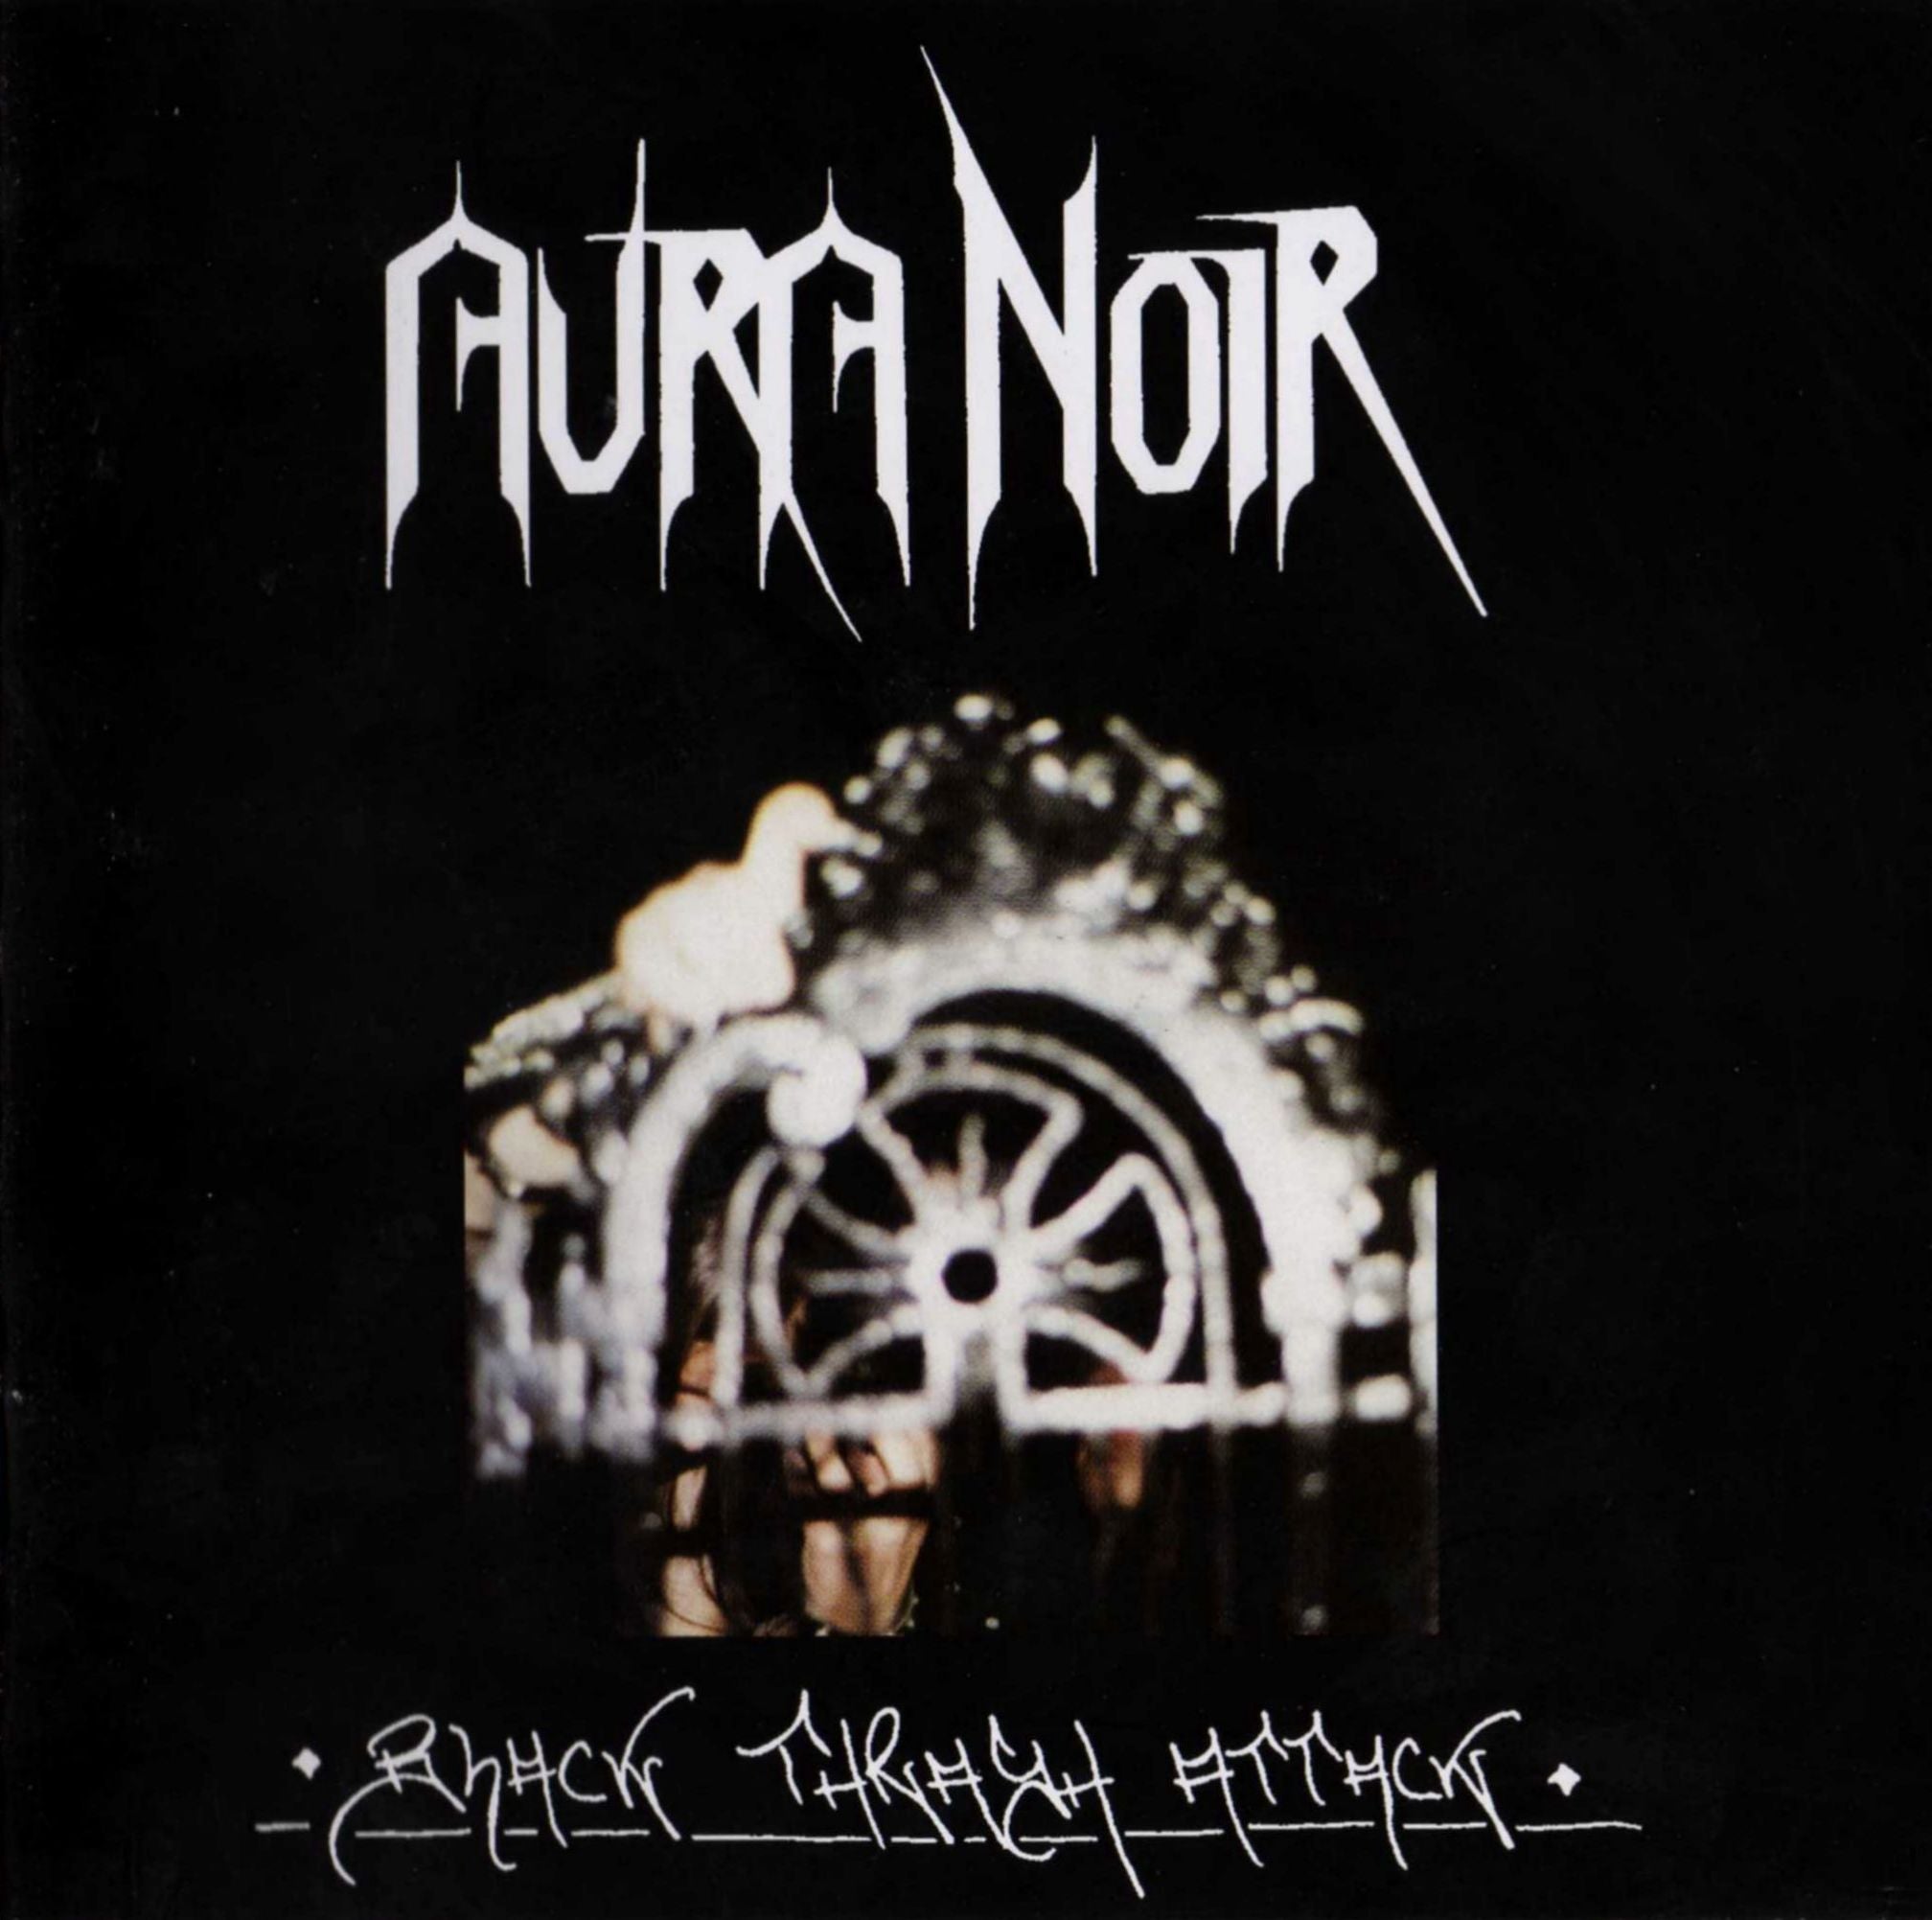 Aura Noir "Black Thrash Attack" CD